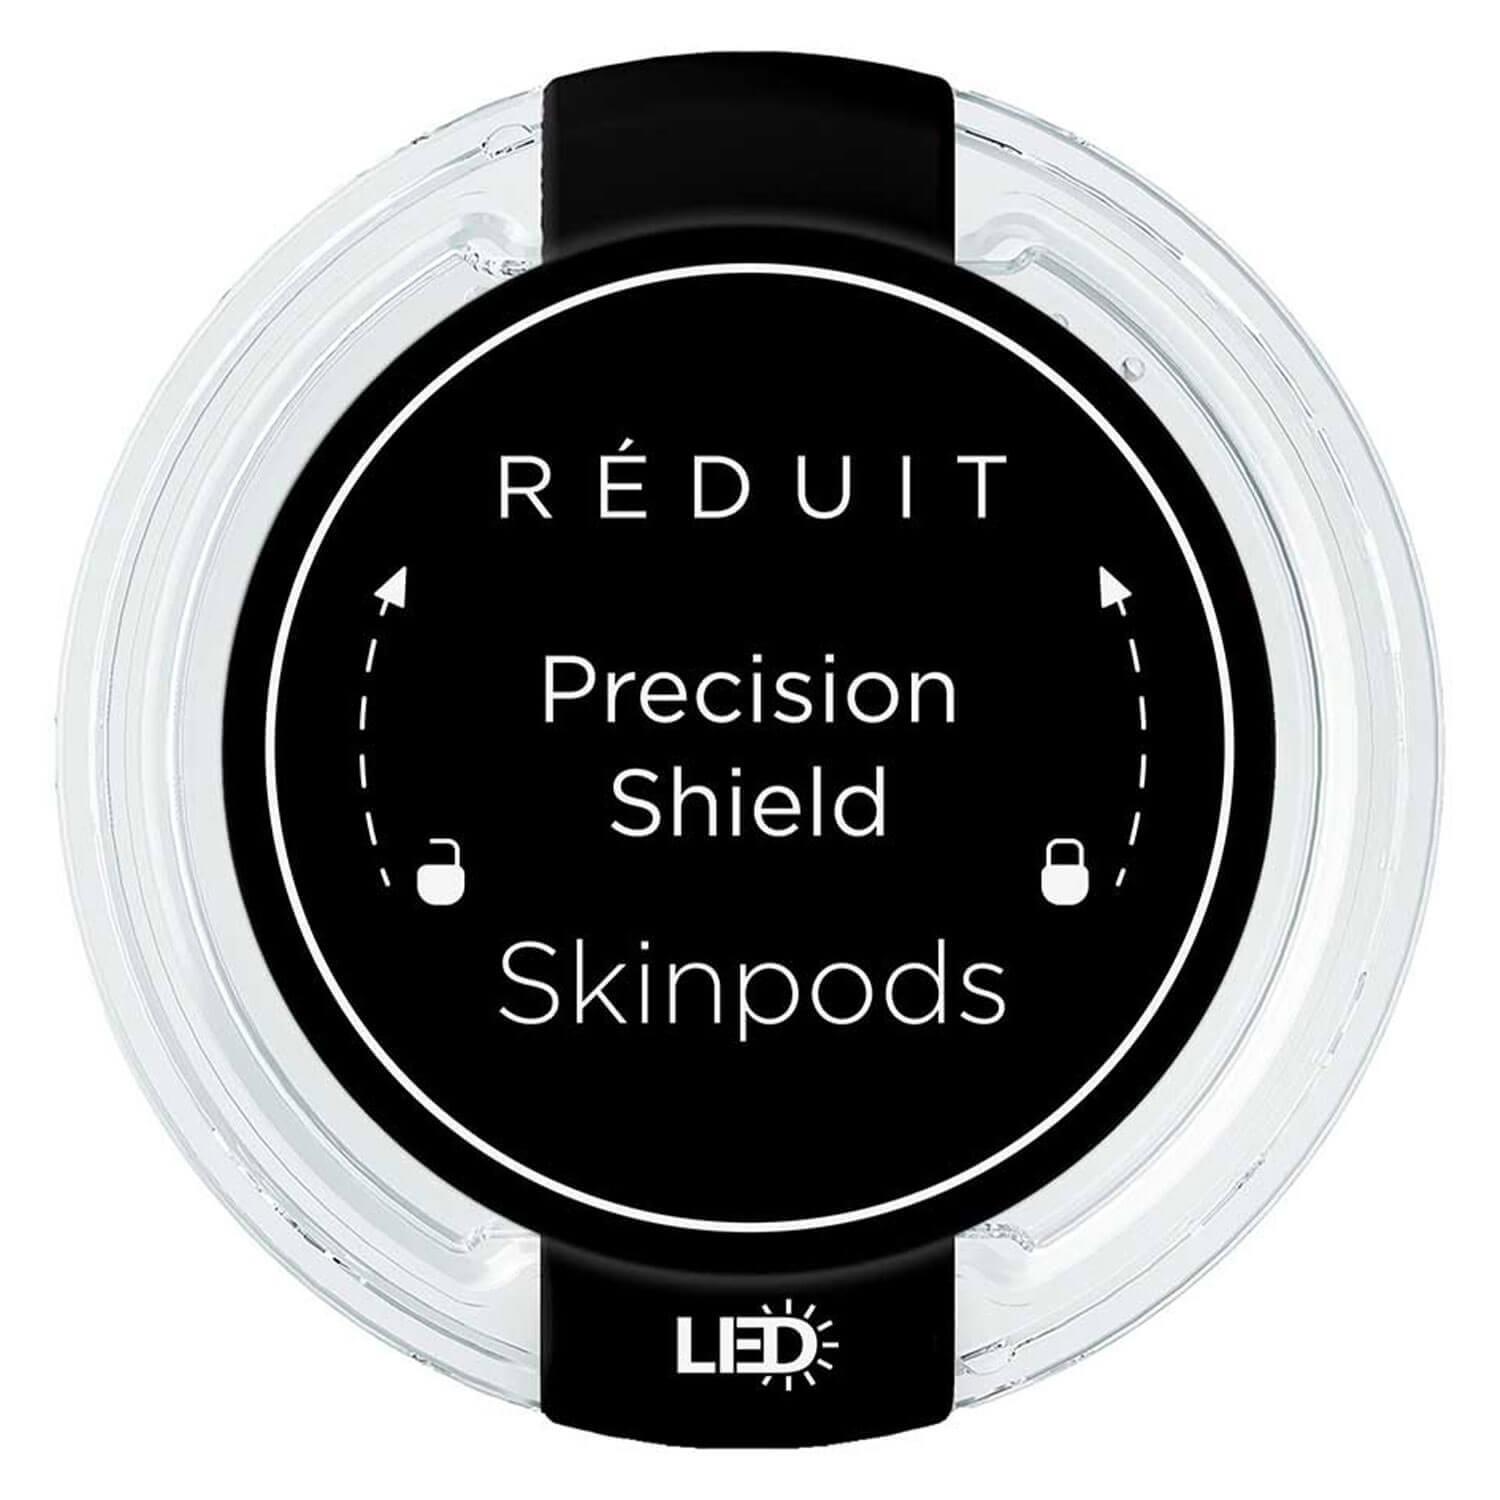 RÉDUIT - Precision Shield Skinpods LED